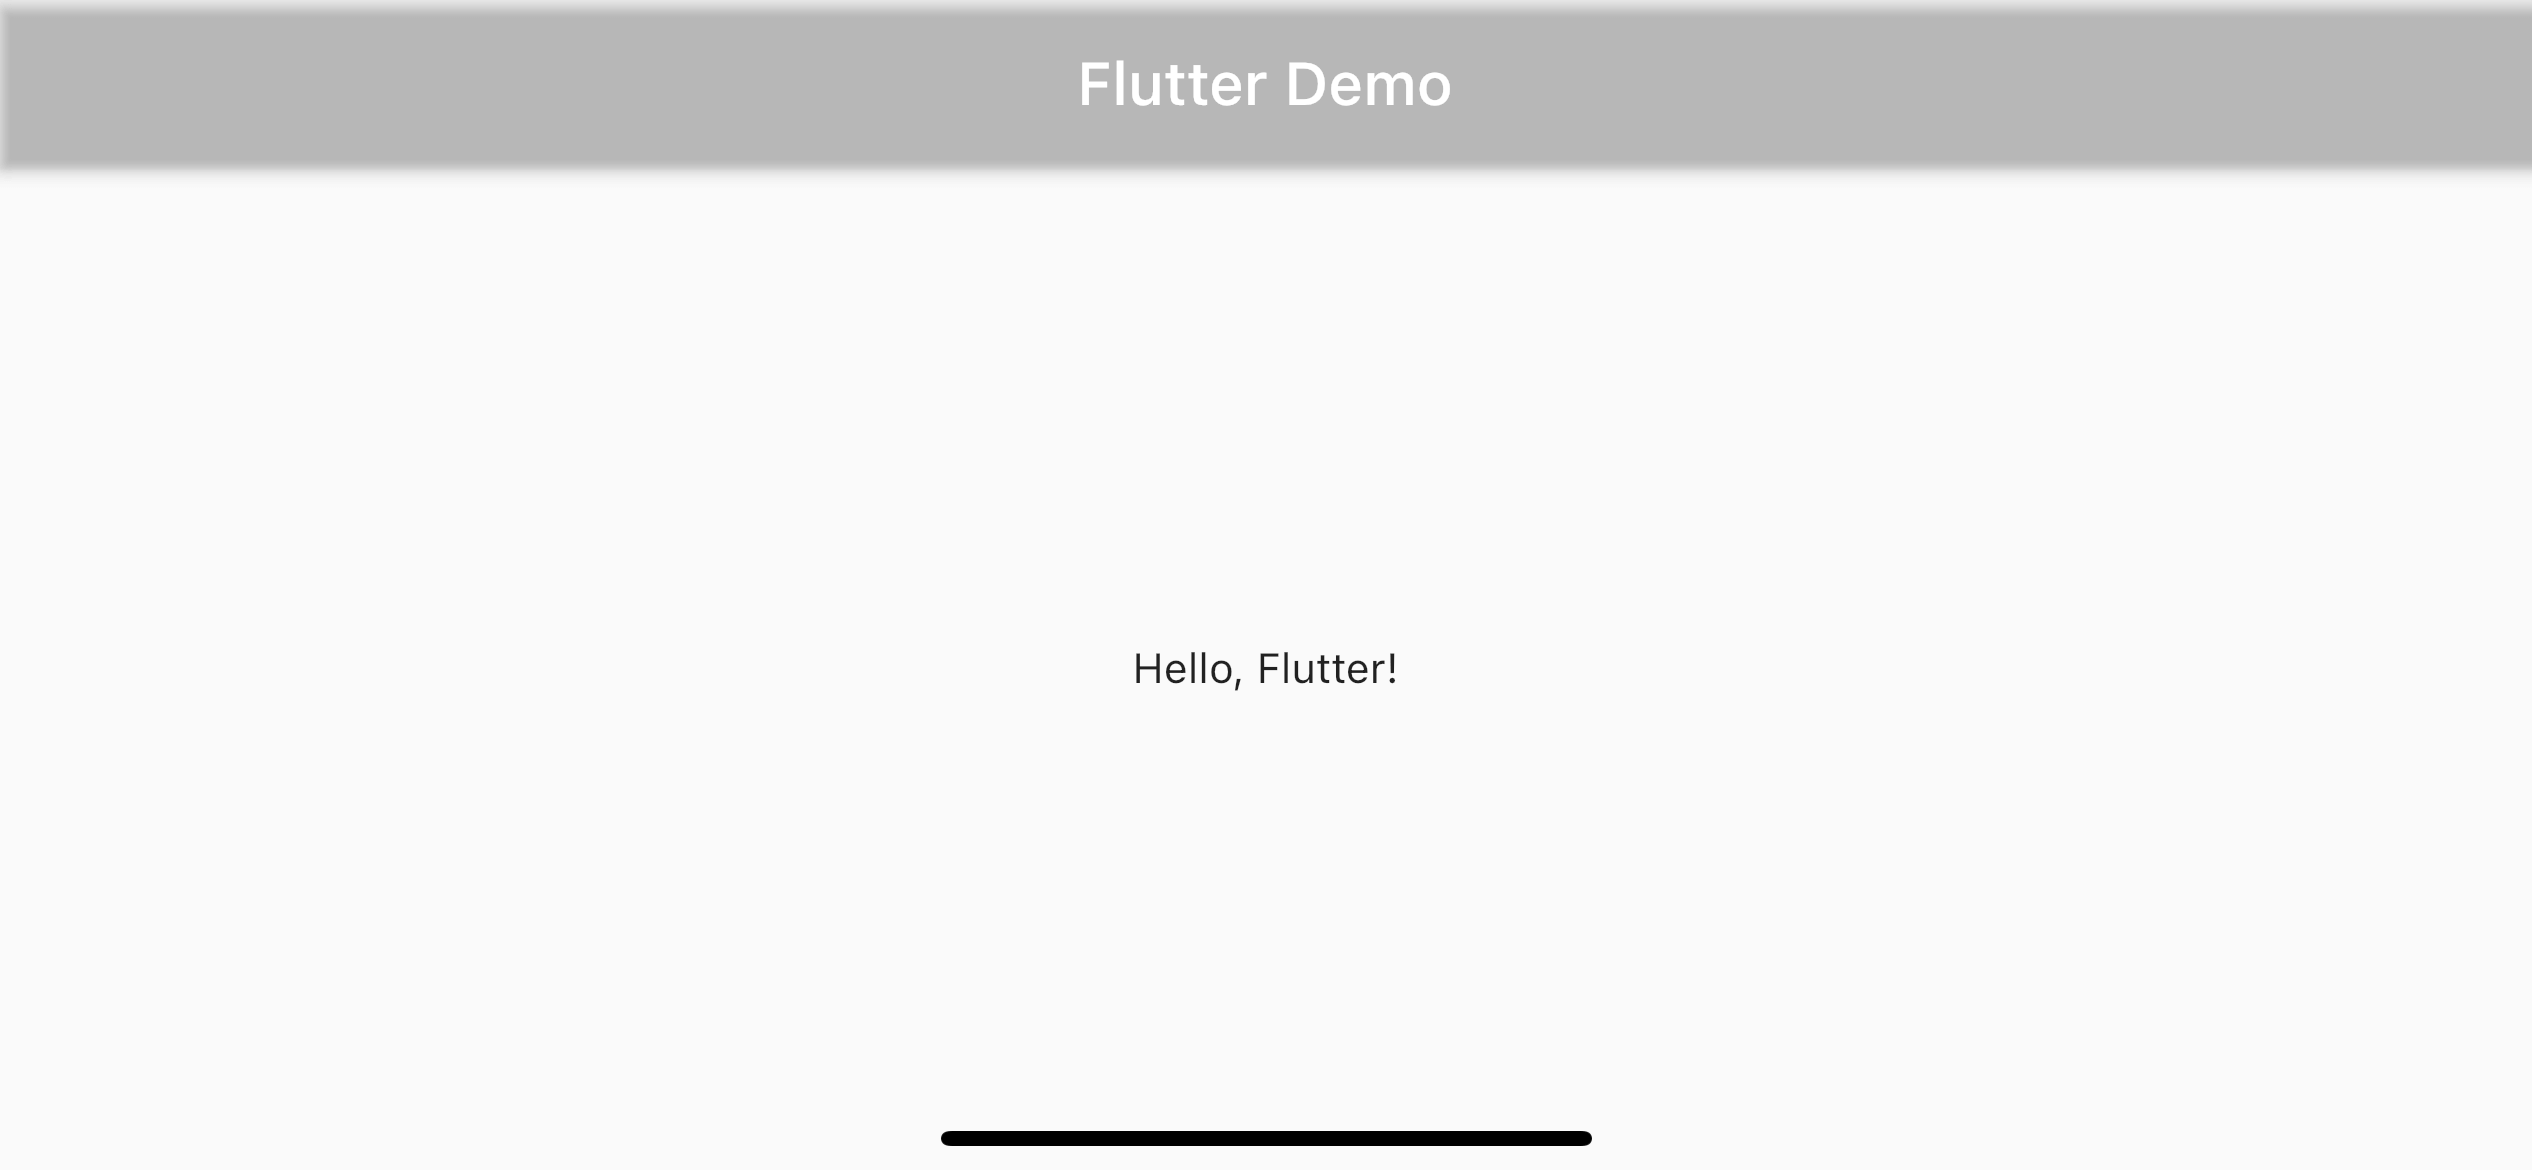 Hãy cùng khám phá hình ảnh liên quan đến Flutter AppBar vô cùng bắt mắt với chế độ transparent. Chỉ với một thao tác đơn giản, bạn đã có được vẻ đẹp hoàn hảo cho ứng dụng của mình.